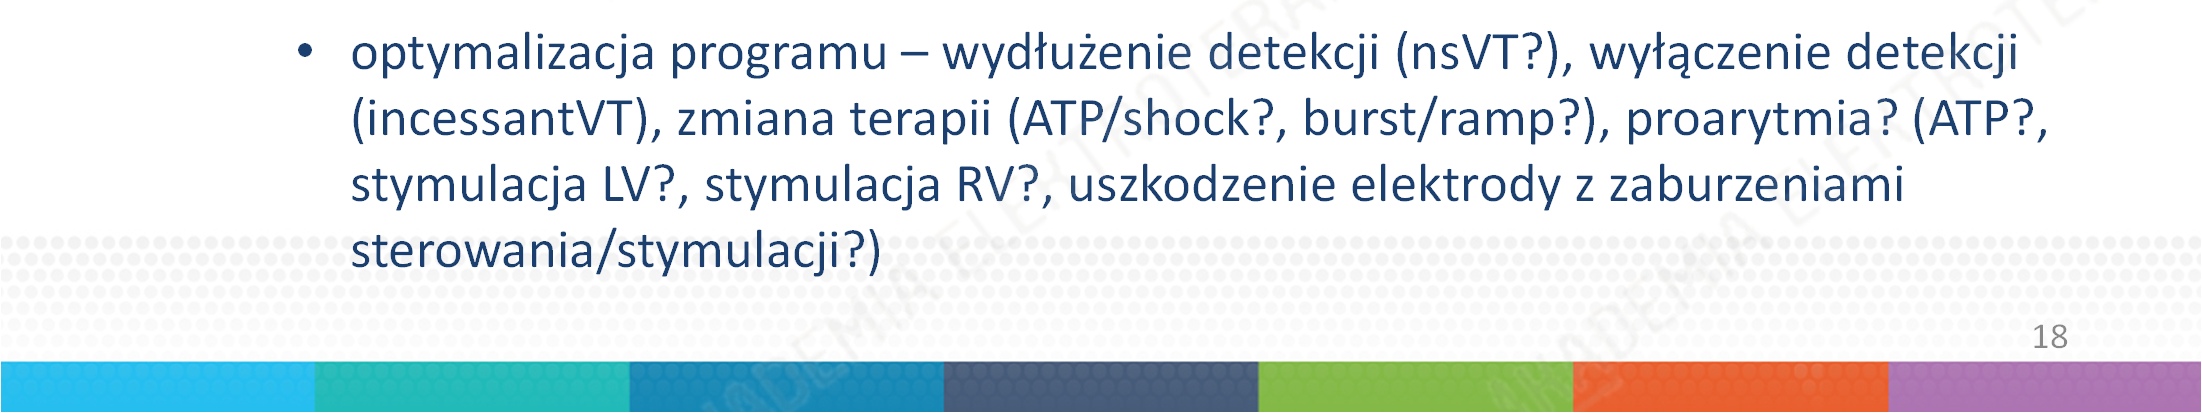 12-odprowadzeniowe EKG, monitorowanie EKG rodzaj arytmii (monomorficzny VT / polimorficzny VT / VF) SpO2, ew.